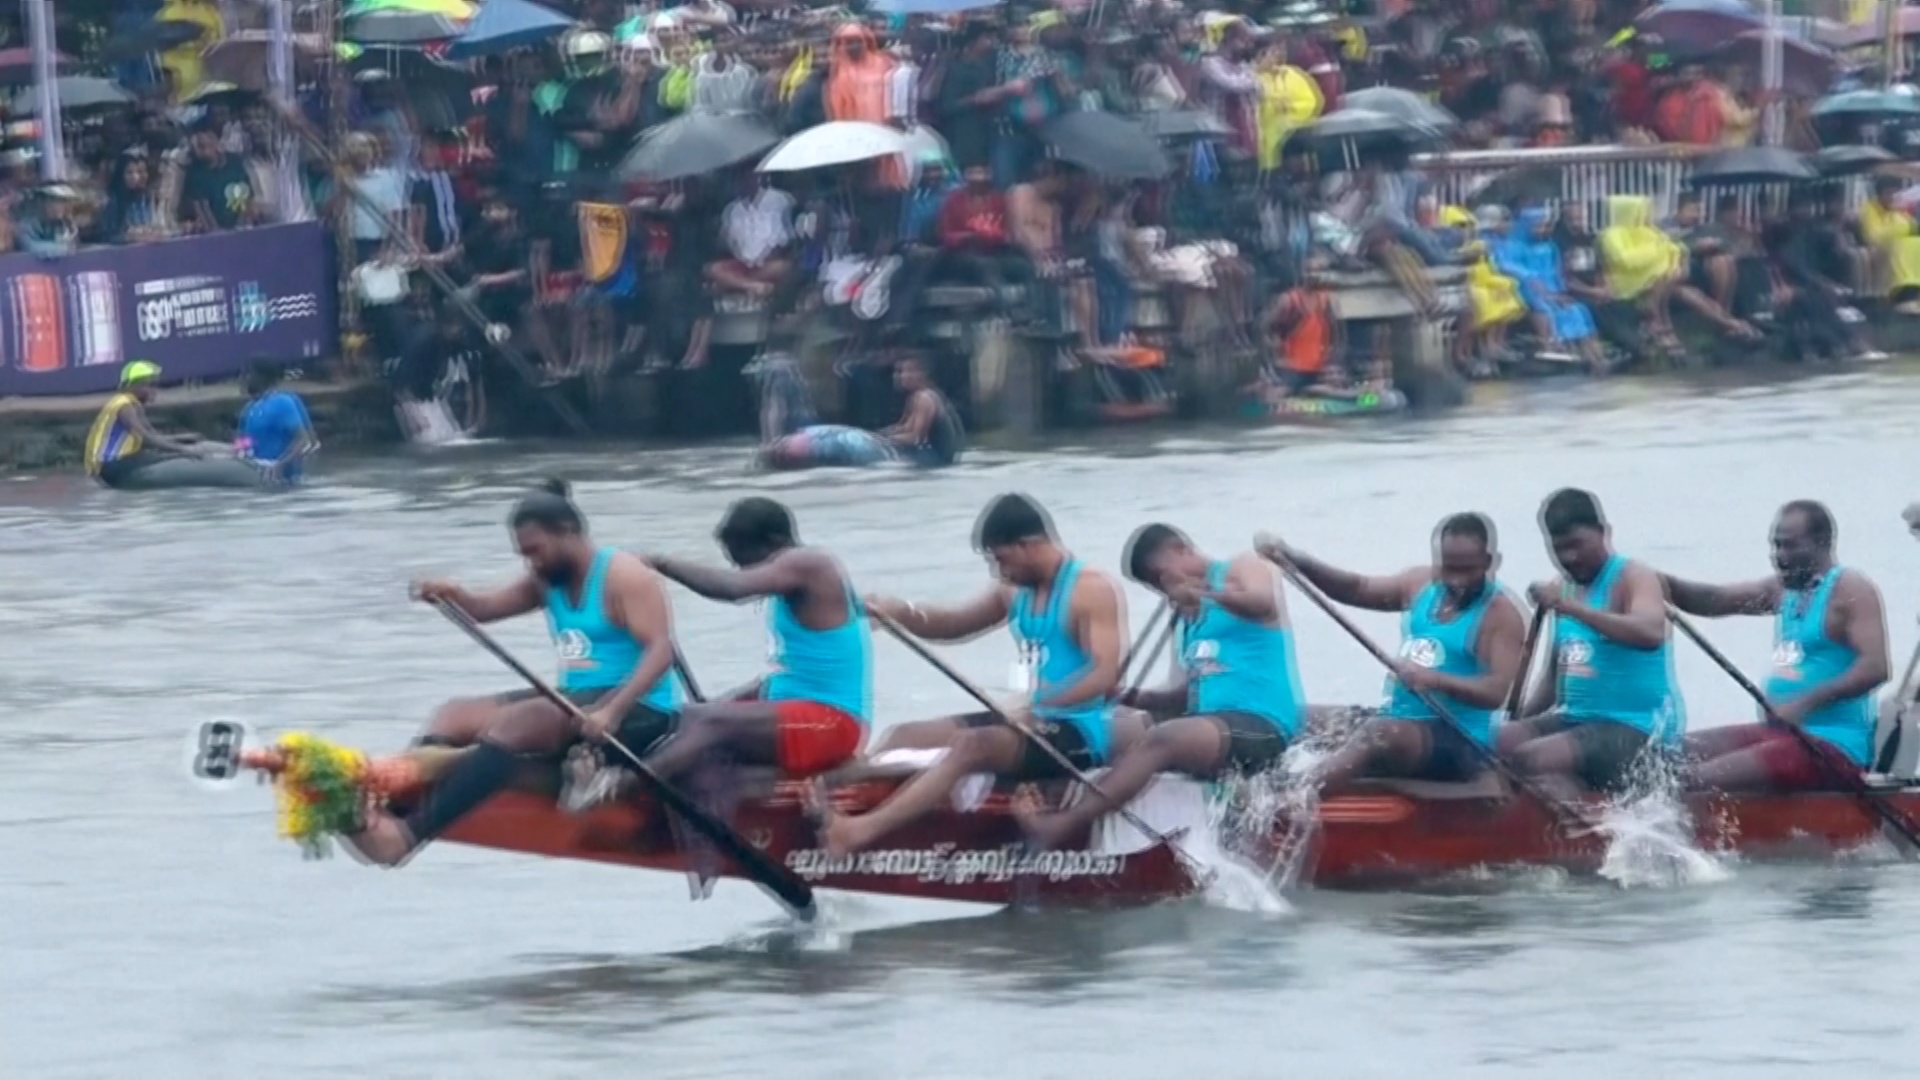 Культовые гонки на лодках-змеях устроили в Индии